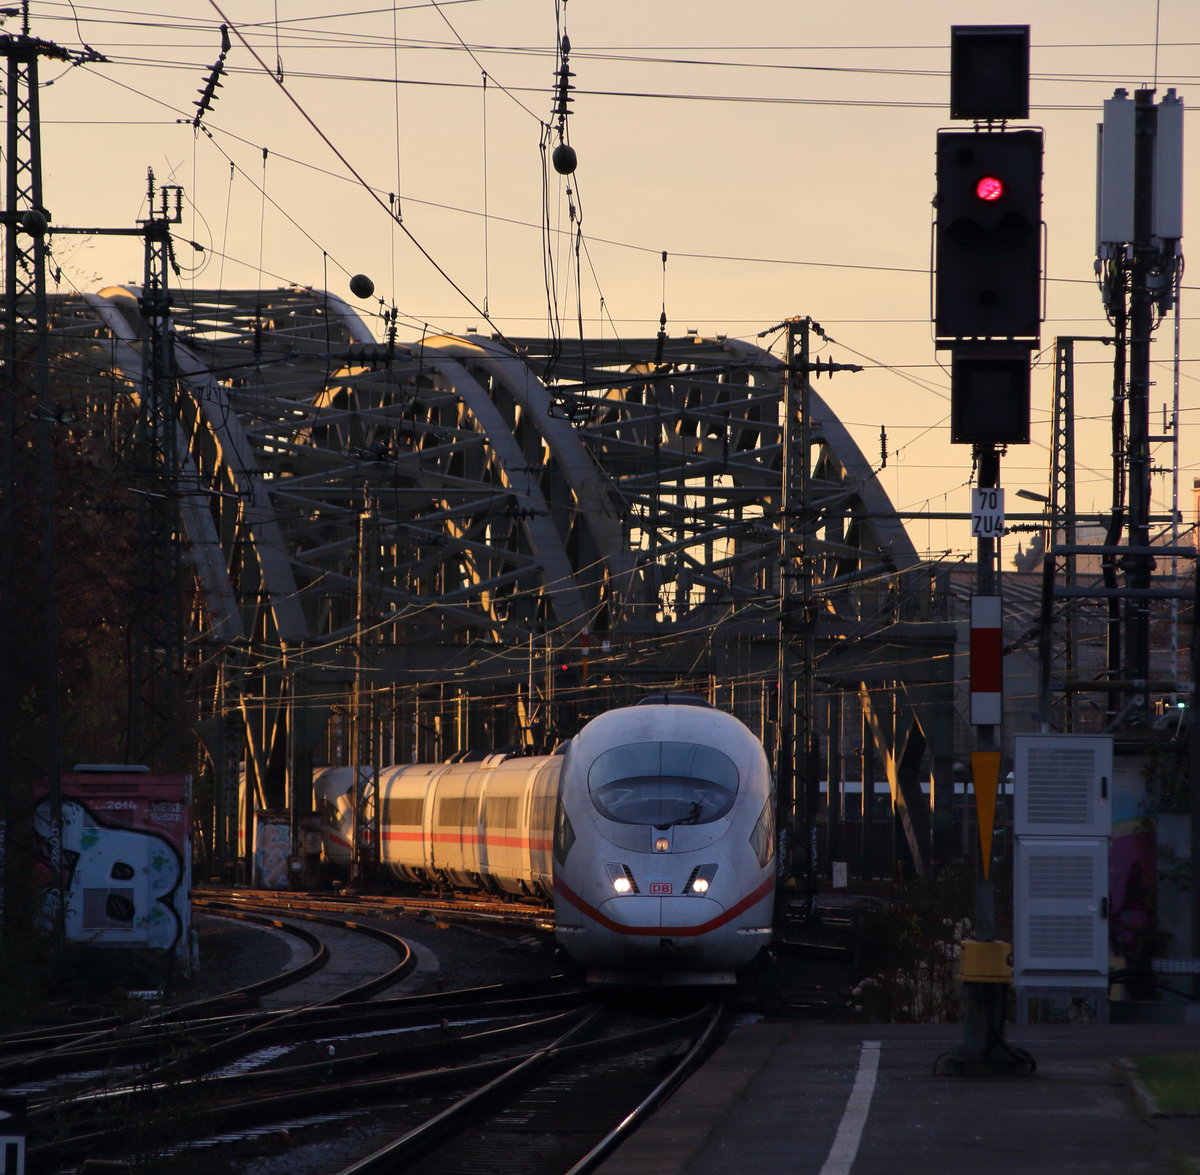 Der letzte Abend im November. An diesem haben Tz 327  Siegen  und Tz 303  Dortmund  als ICE 611 (Dortmund Hbf - München Hbf) gerade den Rhein überquert und durchfahren jetzt den Bahnhof Köln Messe/Deutz.

Köln Messe/Deutz, 30. November 2016